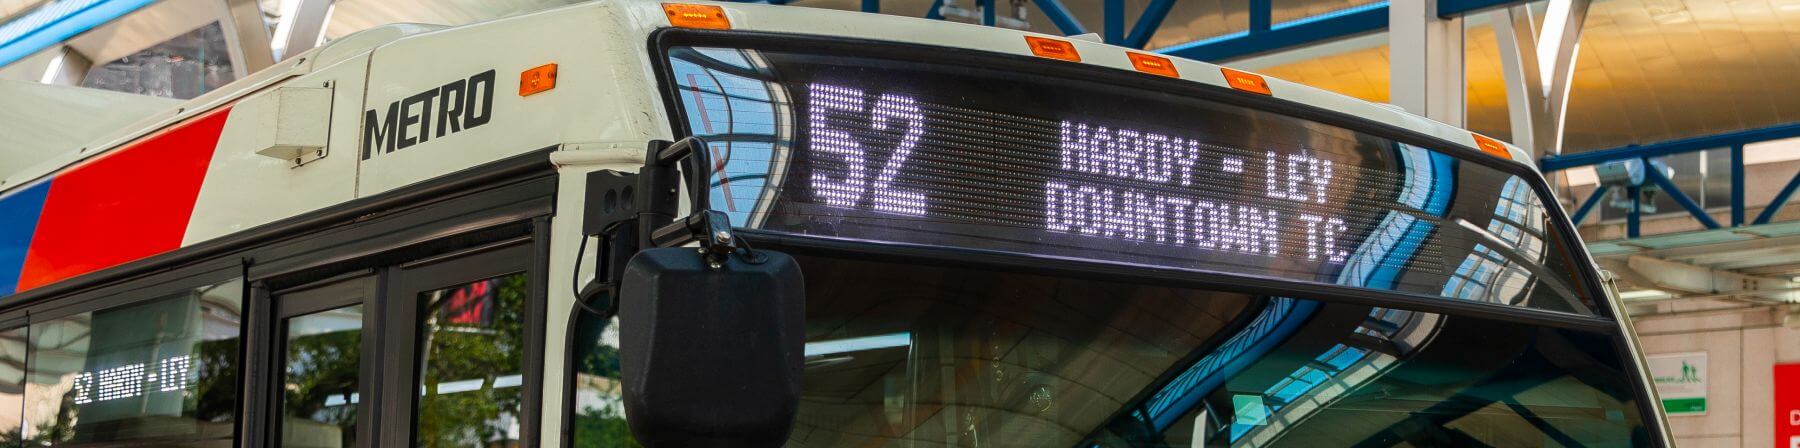 52 Hardy - Ley bus